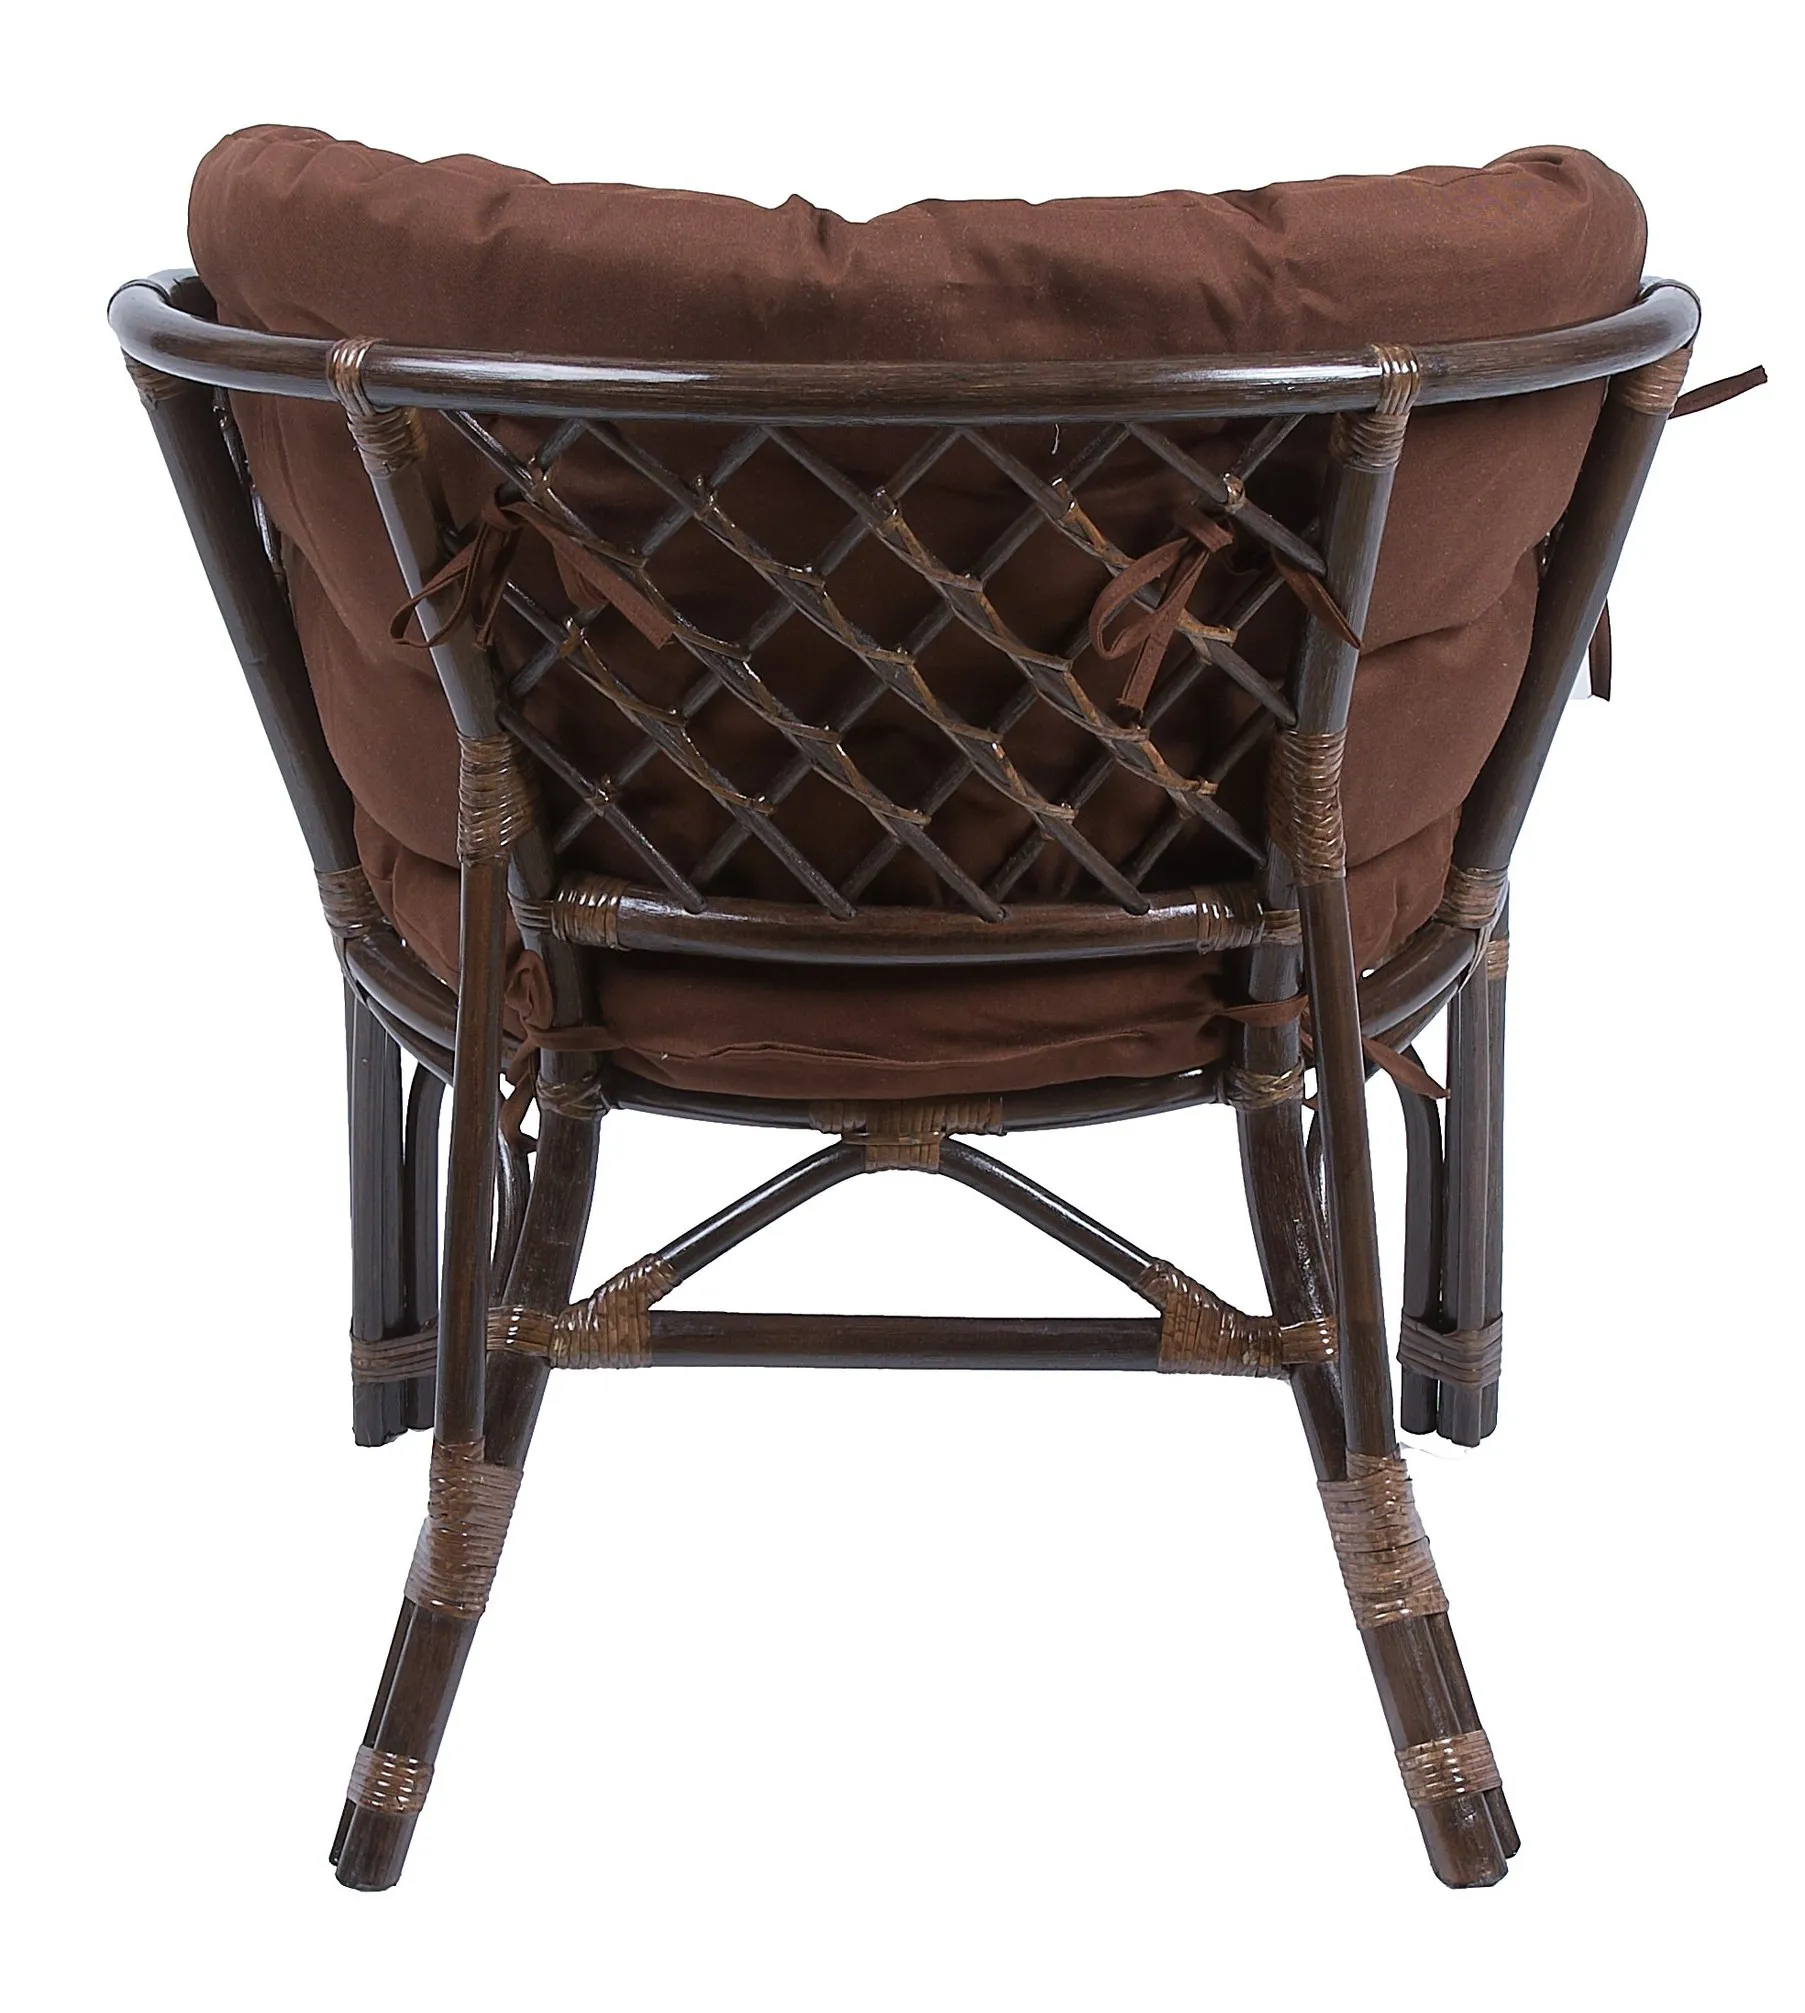 Комплект мебели из ротанга Багама дуэт с овальным столом коричневый подушки твил полные коричневые